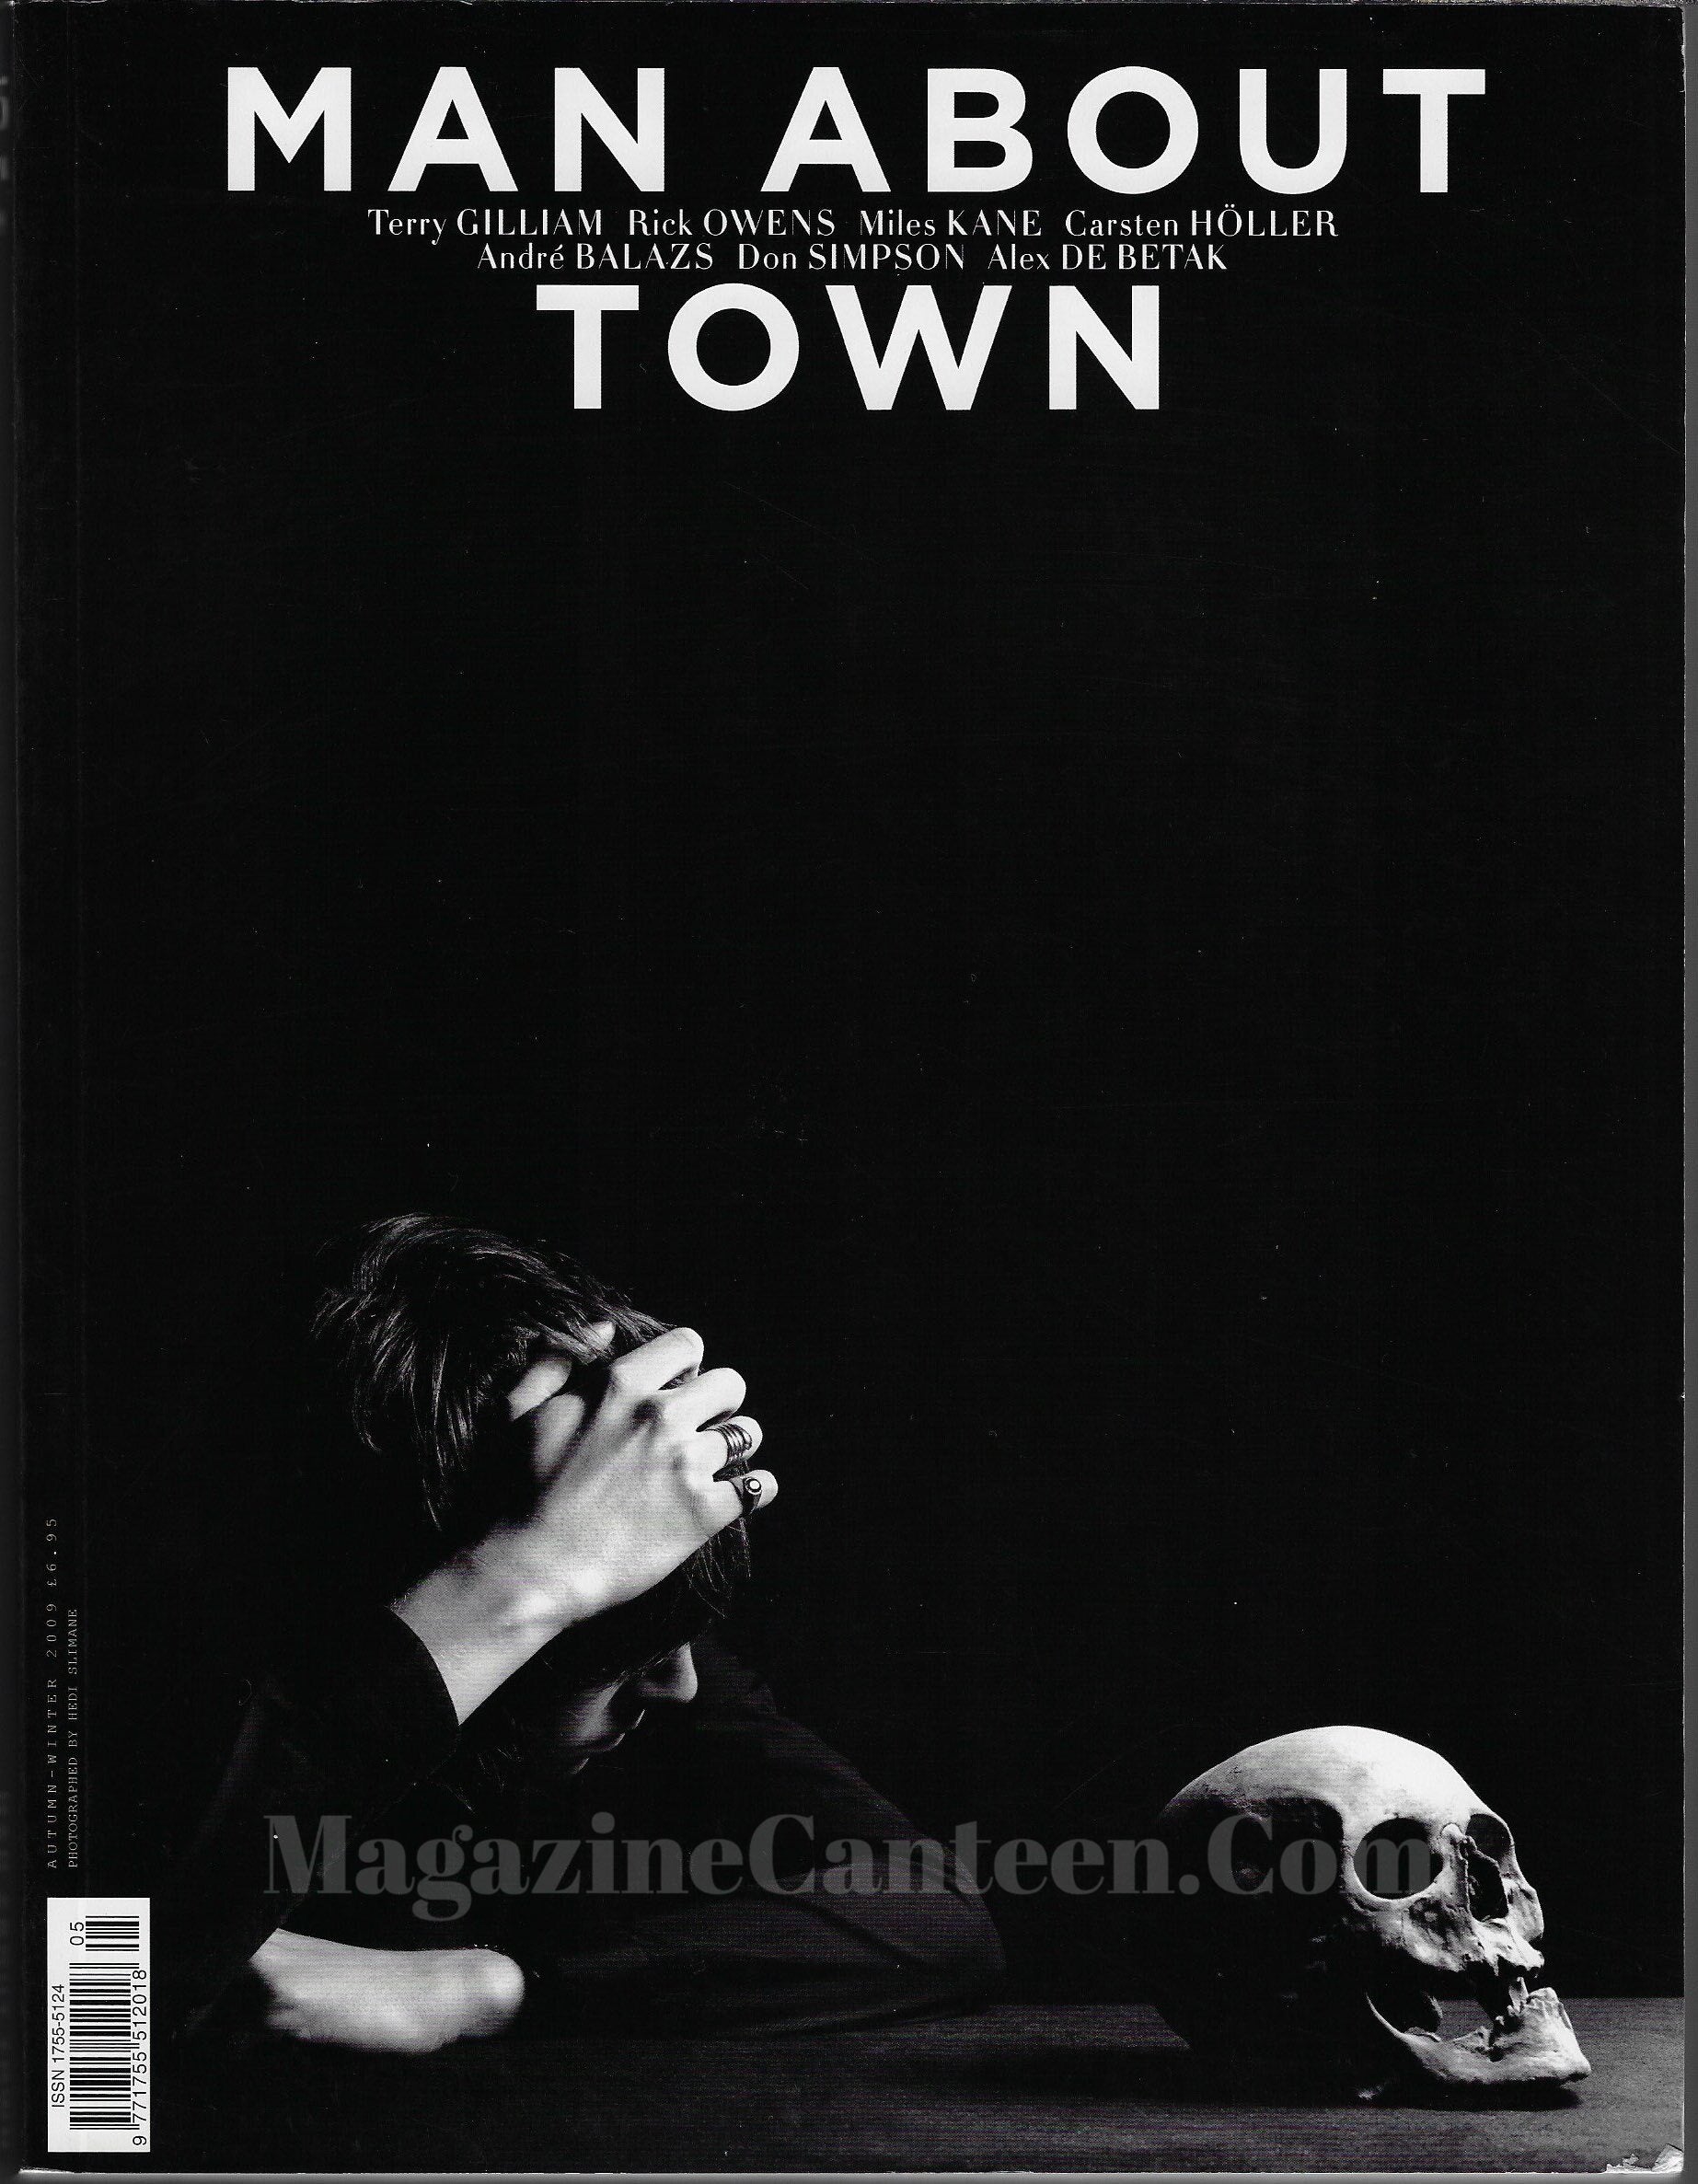 Man About Town Magazine - Miles Kane 2009